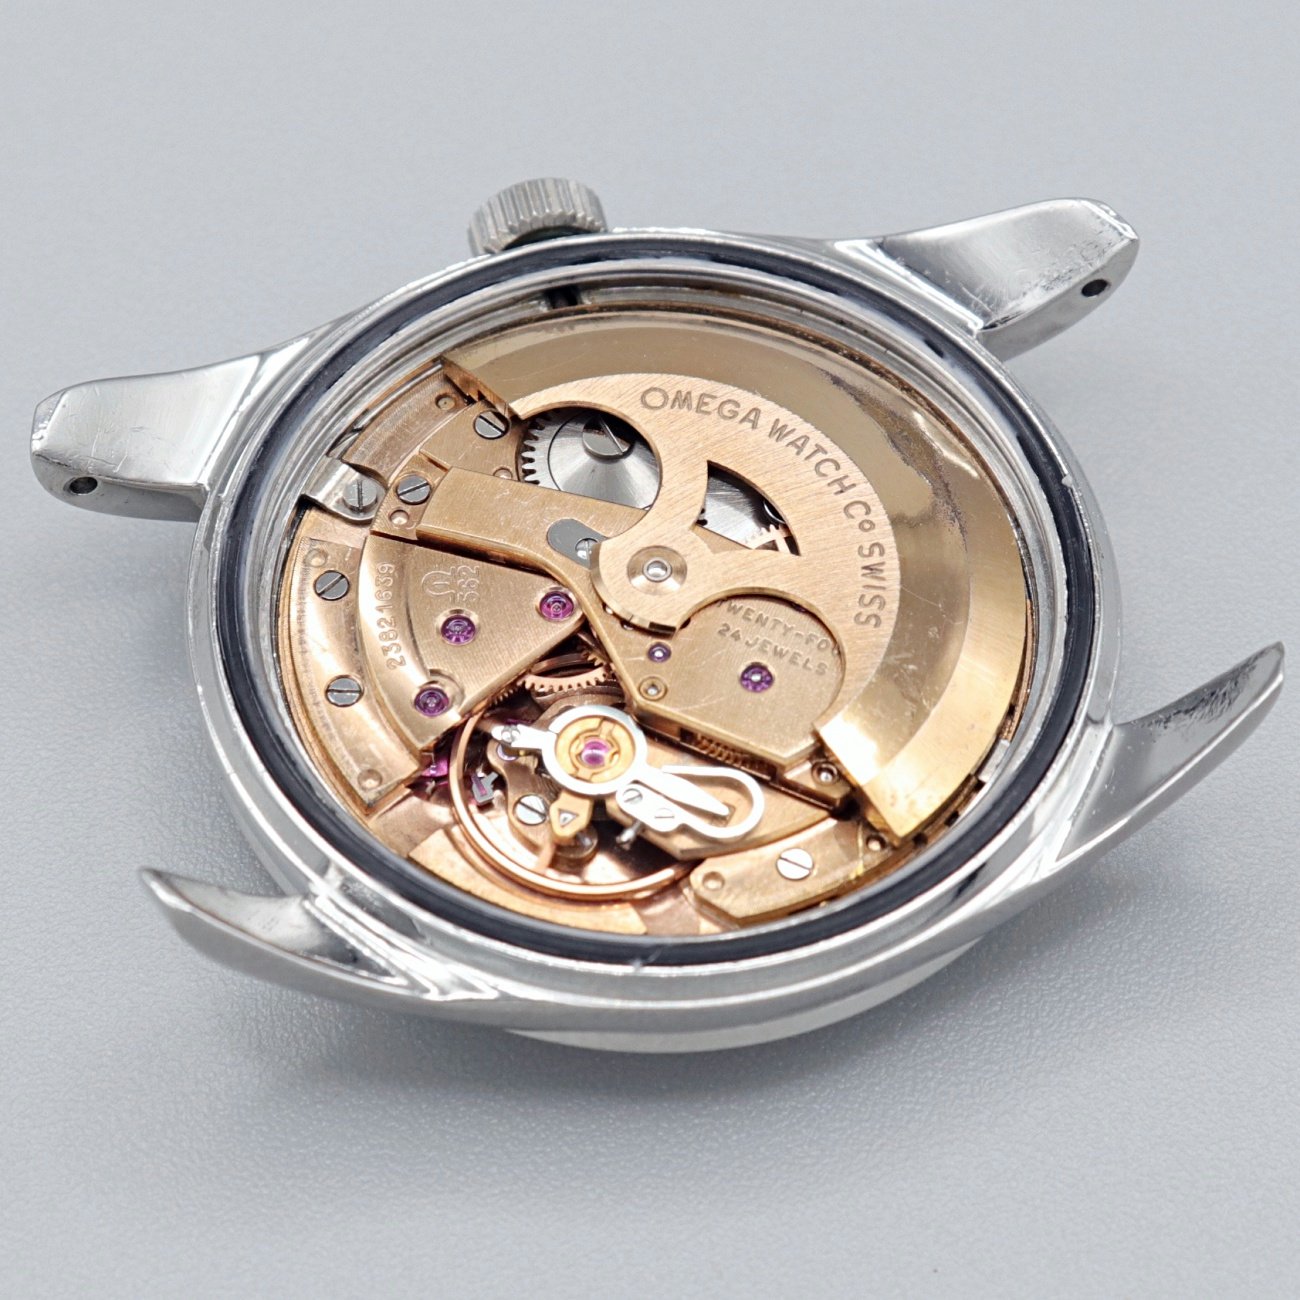 激安特価 Omega オーバーホール済 1960's オメガ自動巻アンティーク腕時計 - 腕時計(アナログ) - www.fonsti.org